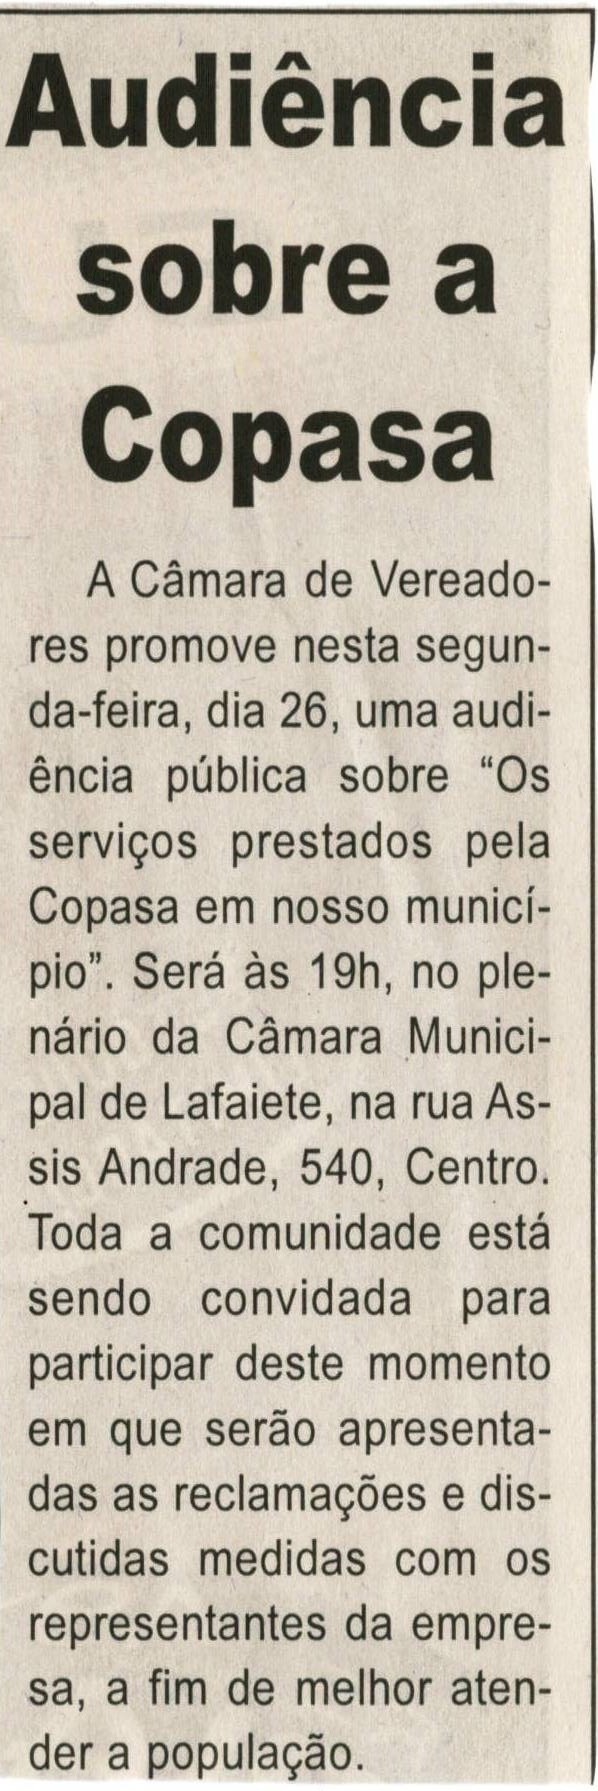 Audiência sobre a Copasa, Jornal Correio da Cidade, Conselheiro Lafaiete, 24 mai. 2008, p. 02.